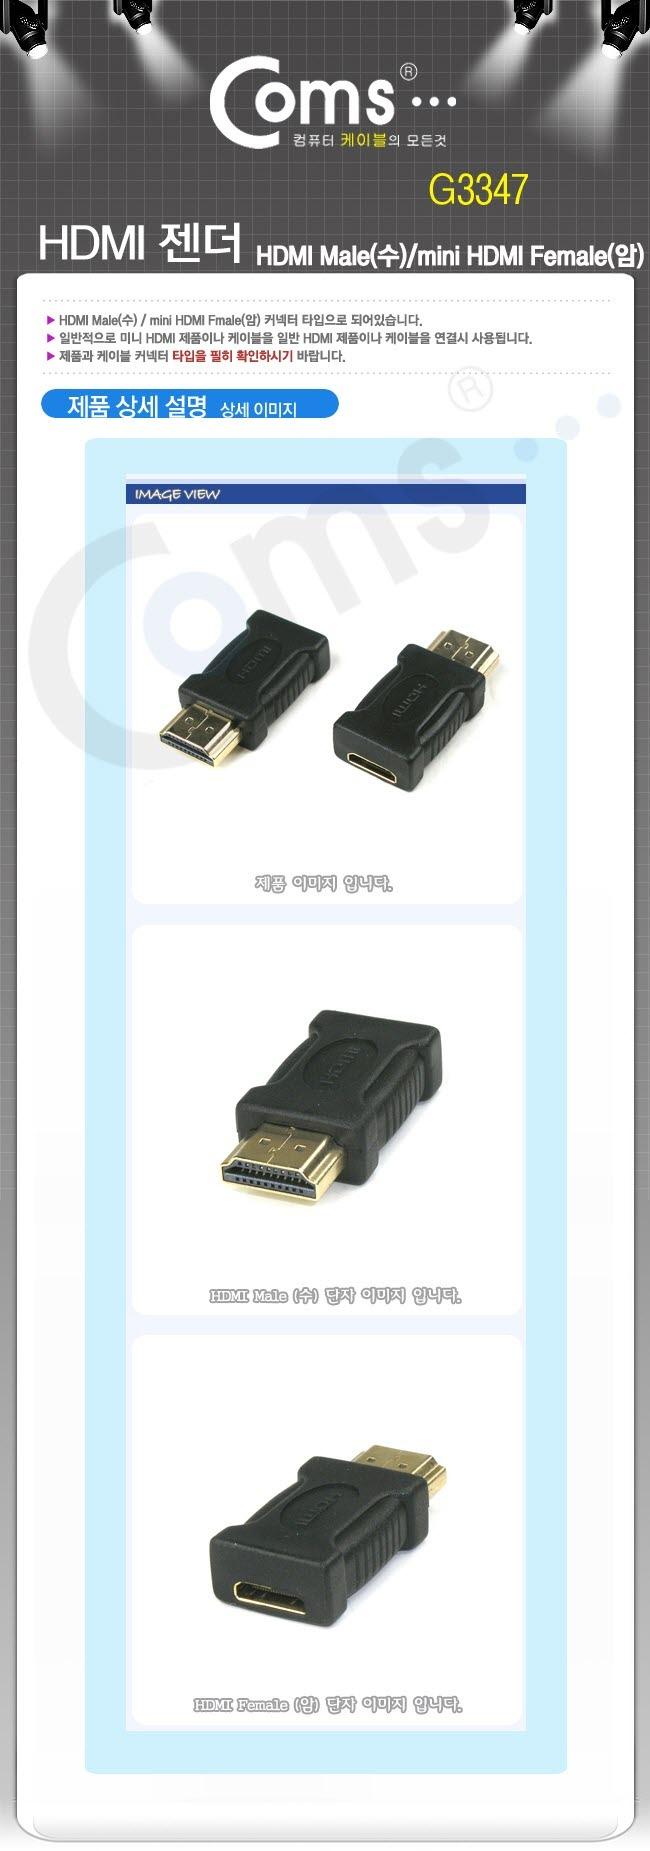 Coms HDMI 젠더 HDMI(M) HDMI mini(F) 젠더 케이블젠더 컴퓨터젠더 PC젠더 음향젠더 노트북젠더 PC부품 컴퓨터부품 노트북부품 연장젠더 노트북연장젠더 컴퓨터연장젠더 부품젠더